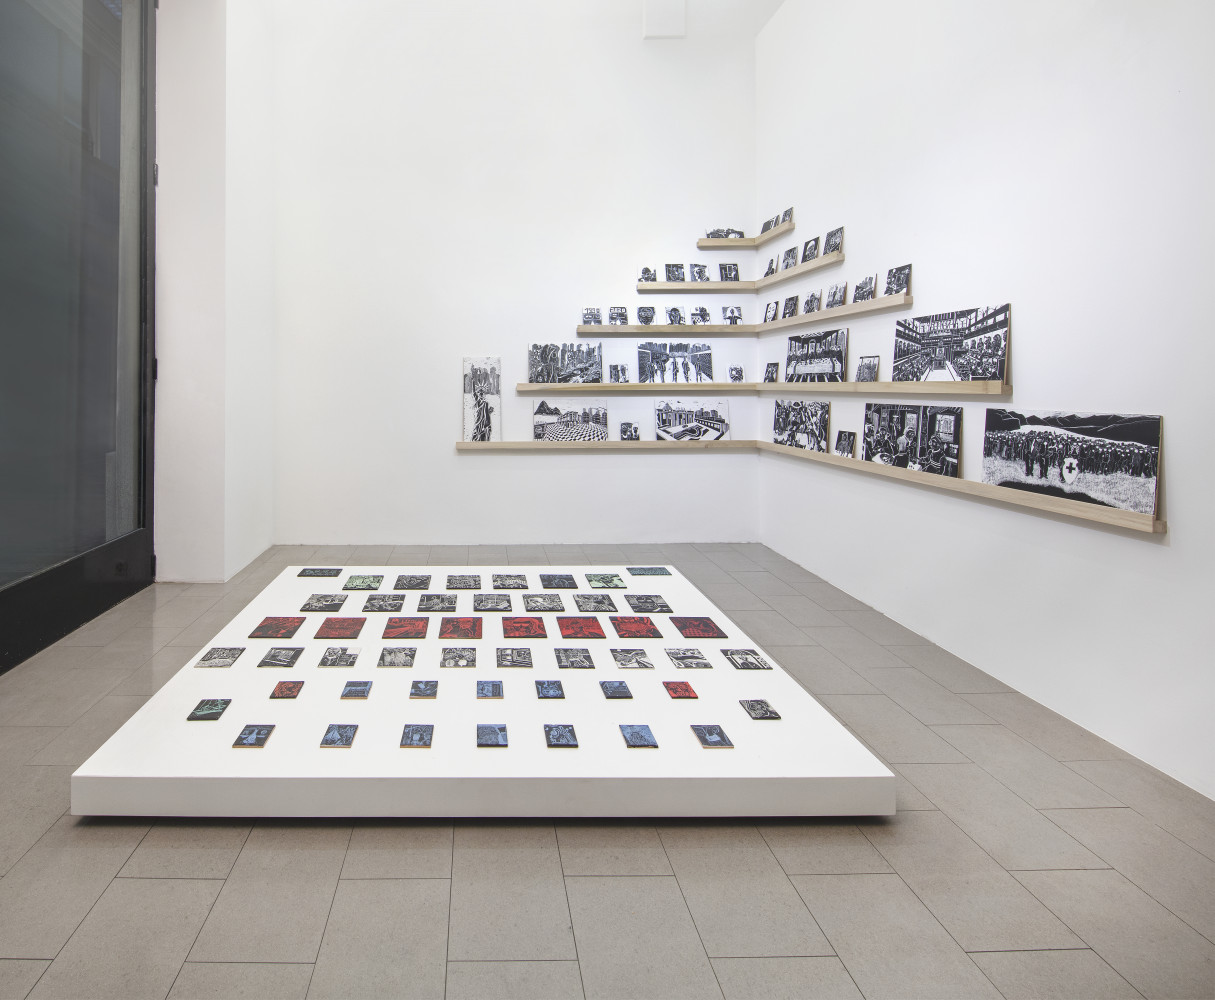 Alex Dorici, ‘Diario di Viaggio" 2020’, Installation view, Buchmann Lugano